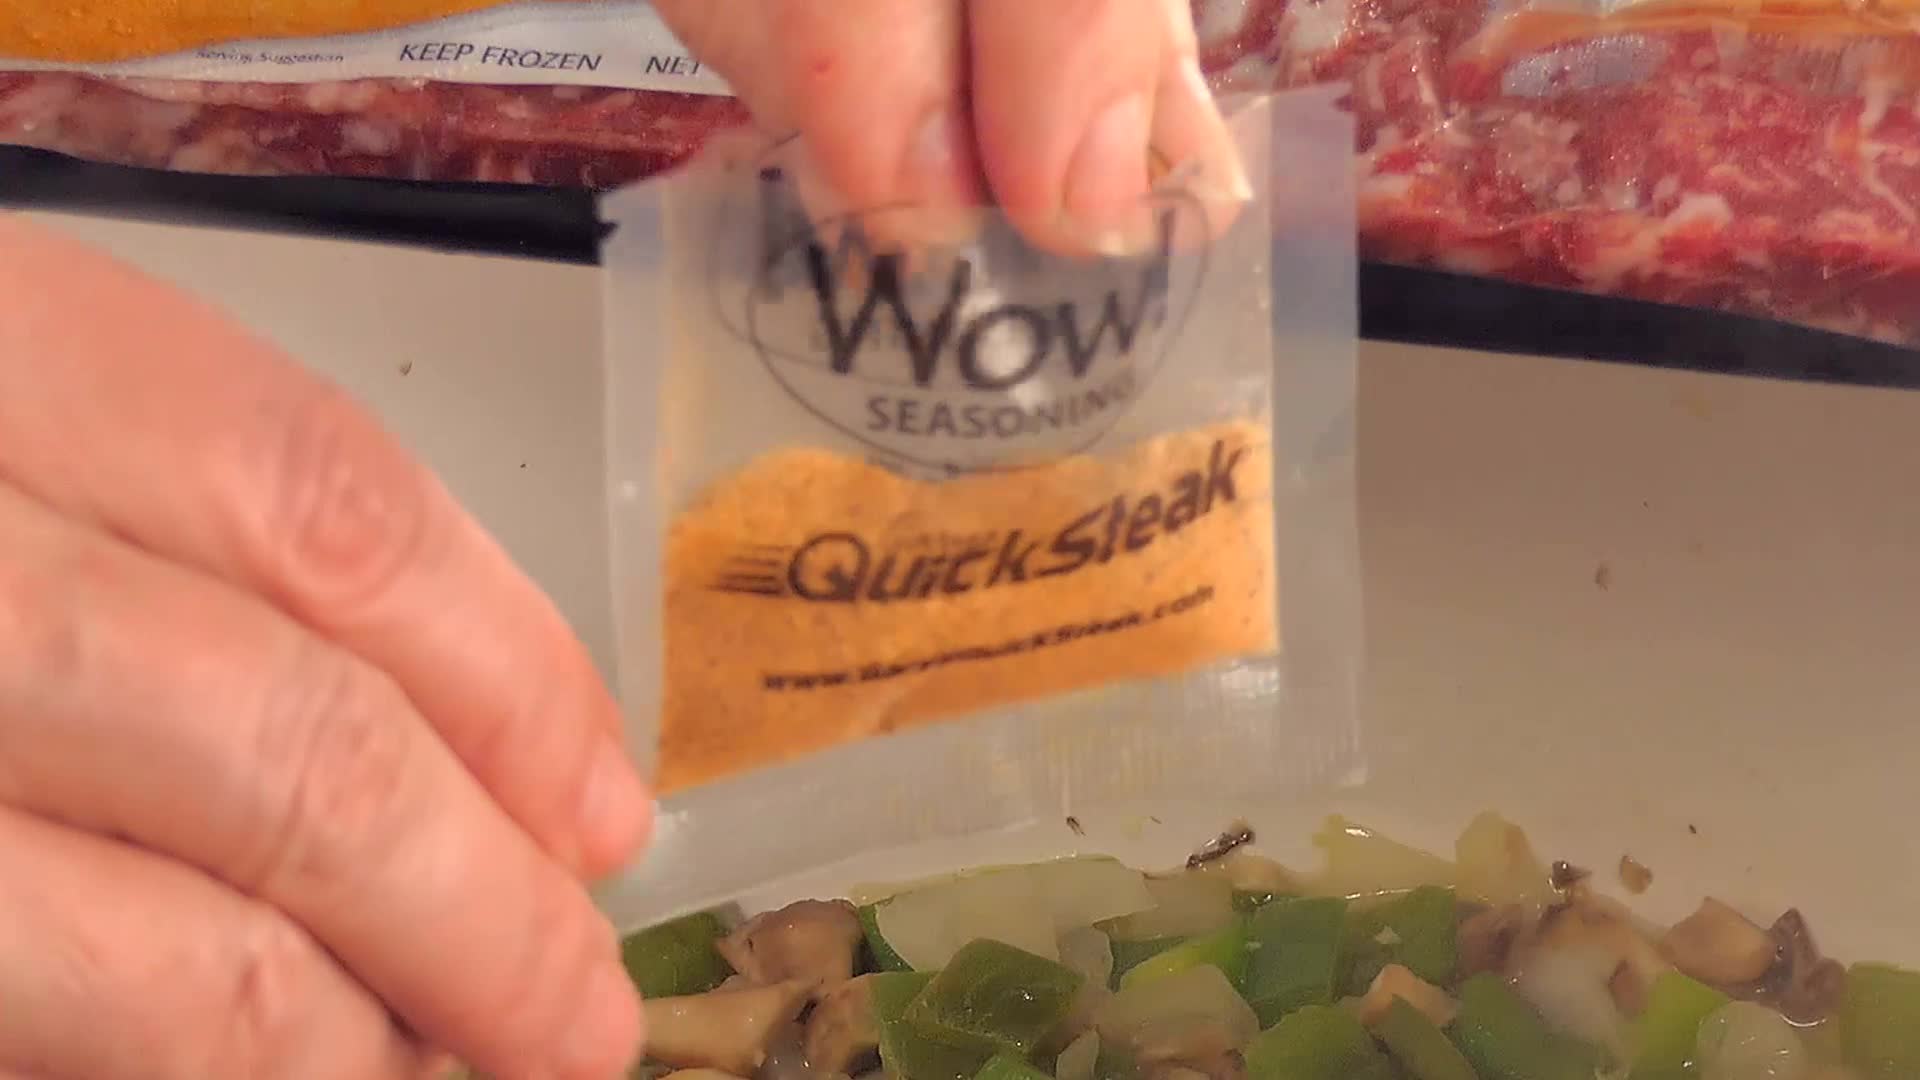  Gary's QuickSteak Wow! Seasoning